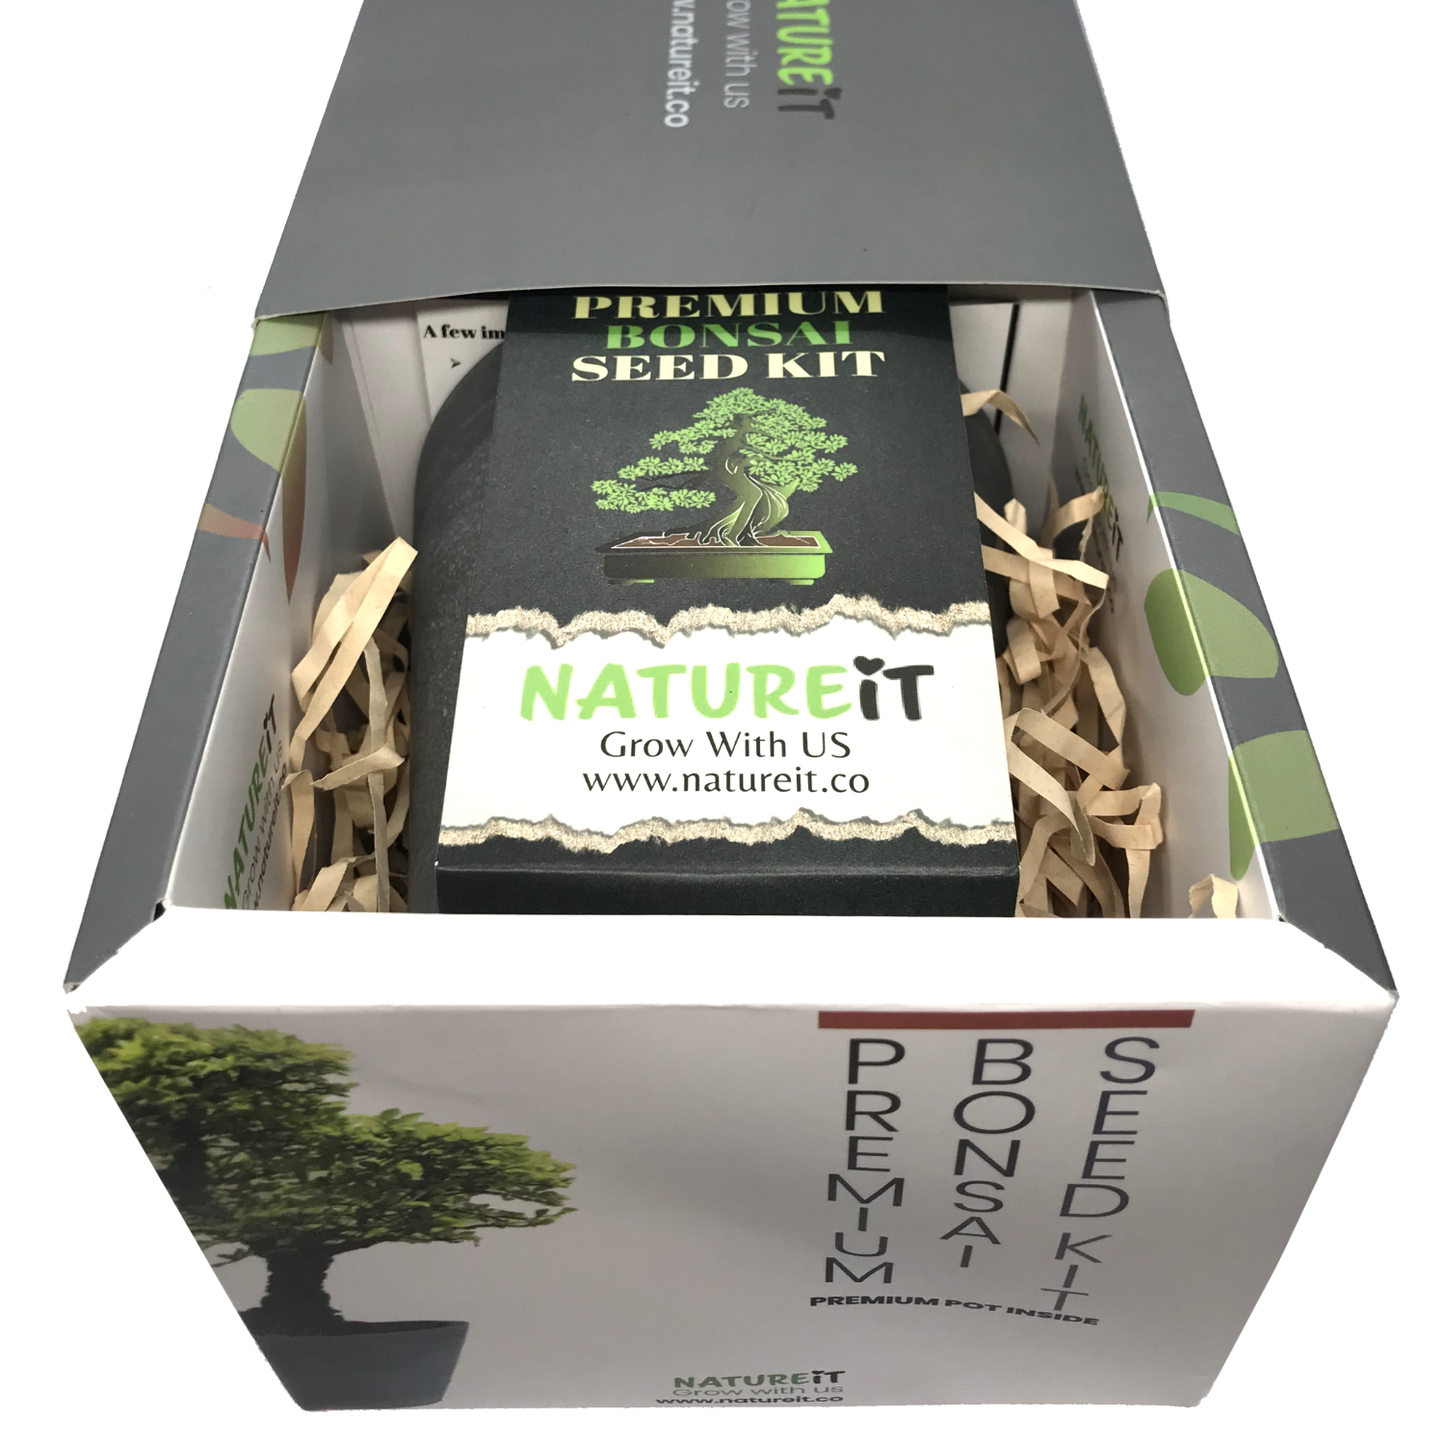 Natureit Easy to grow bonsai tree from seed premium bonsai tree seed starter kit